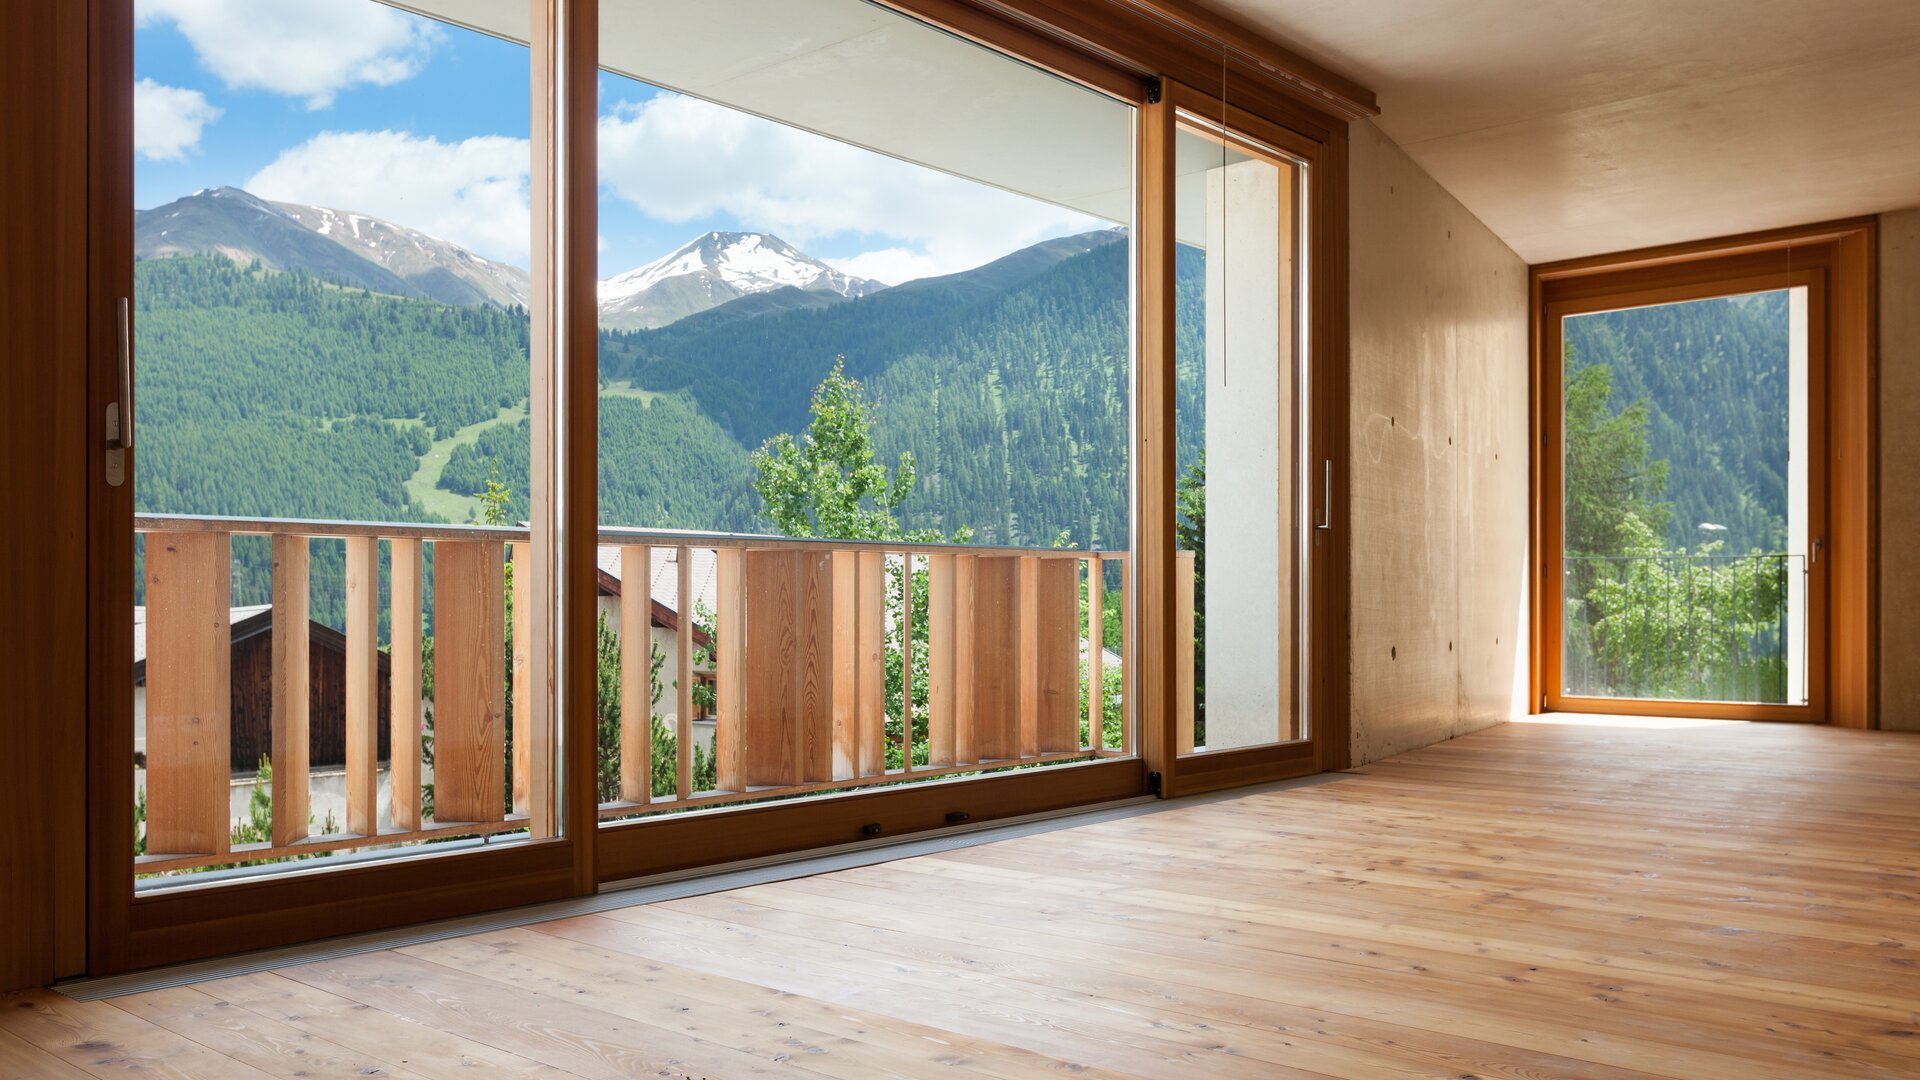 Moderner leerstehender Raum in heller Holzoptik mit großen Holzfenstern und Blick in die Natur.